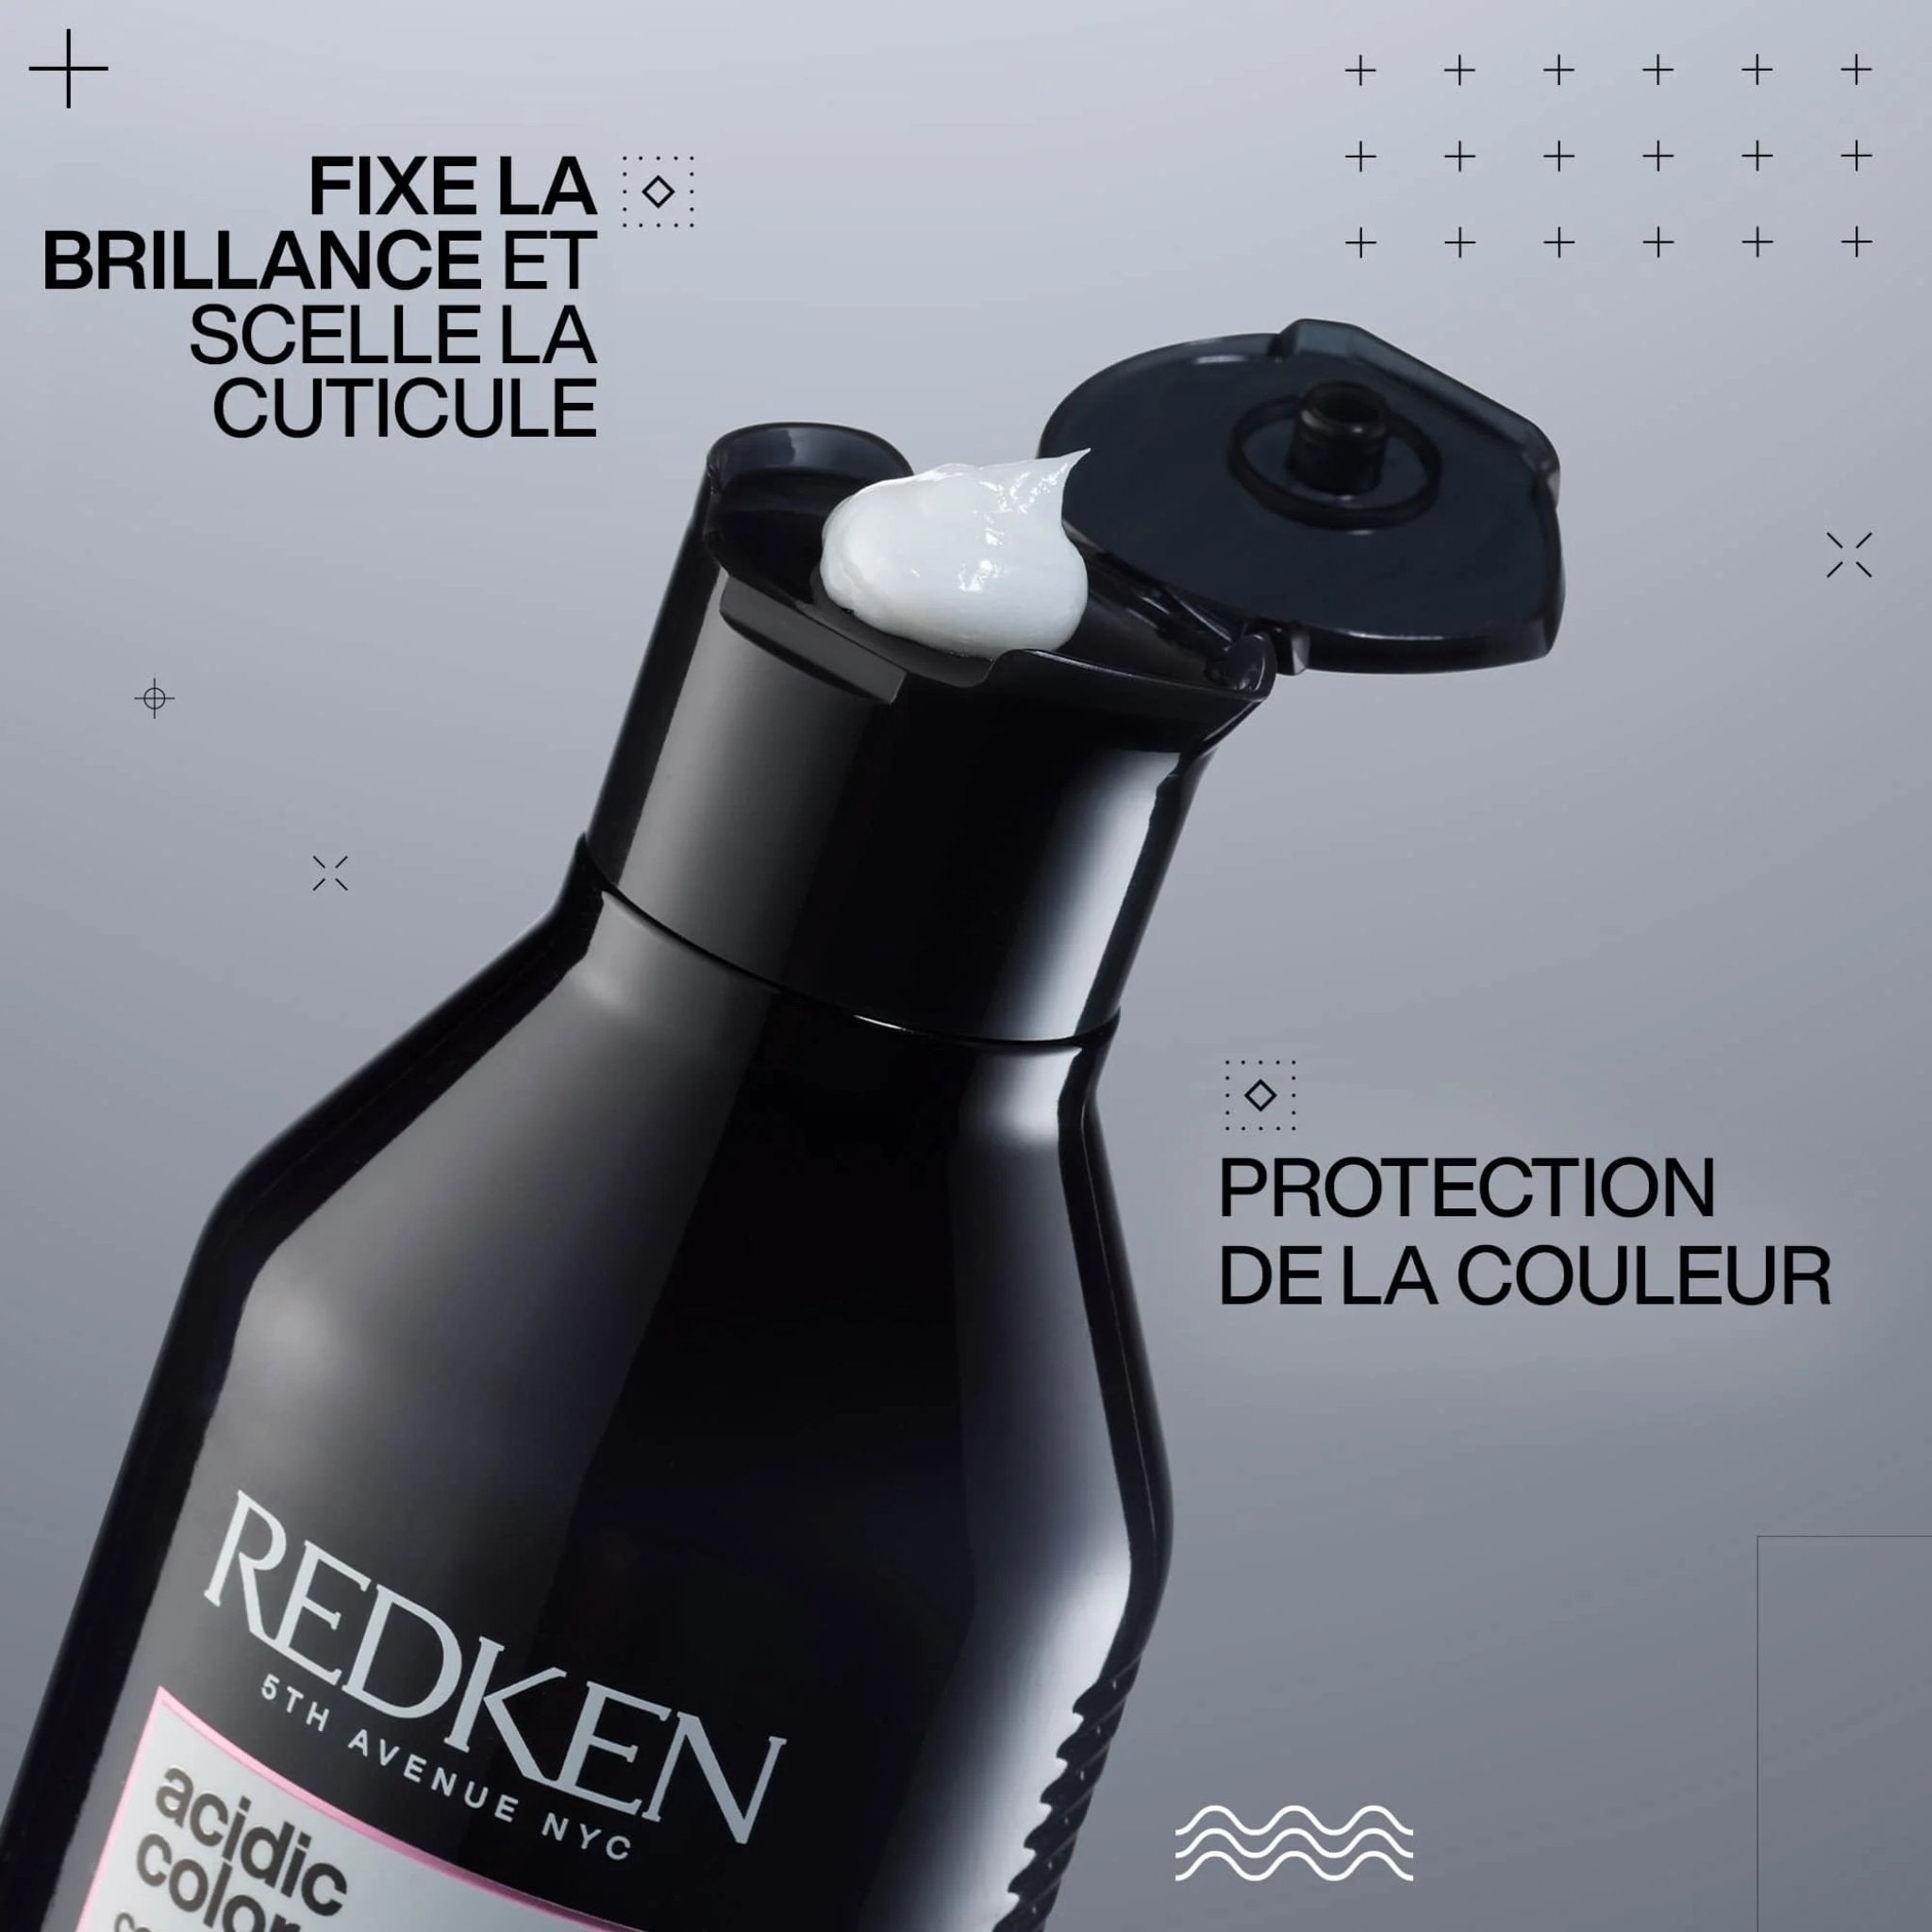 Redken. Acidic Color Gloss Revitalisant - 1000 ml - Concept C. Shop